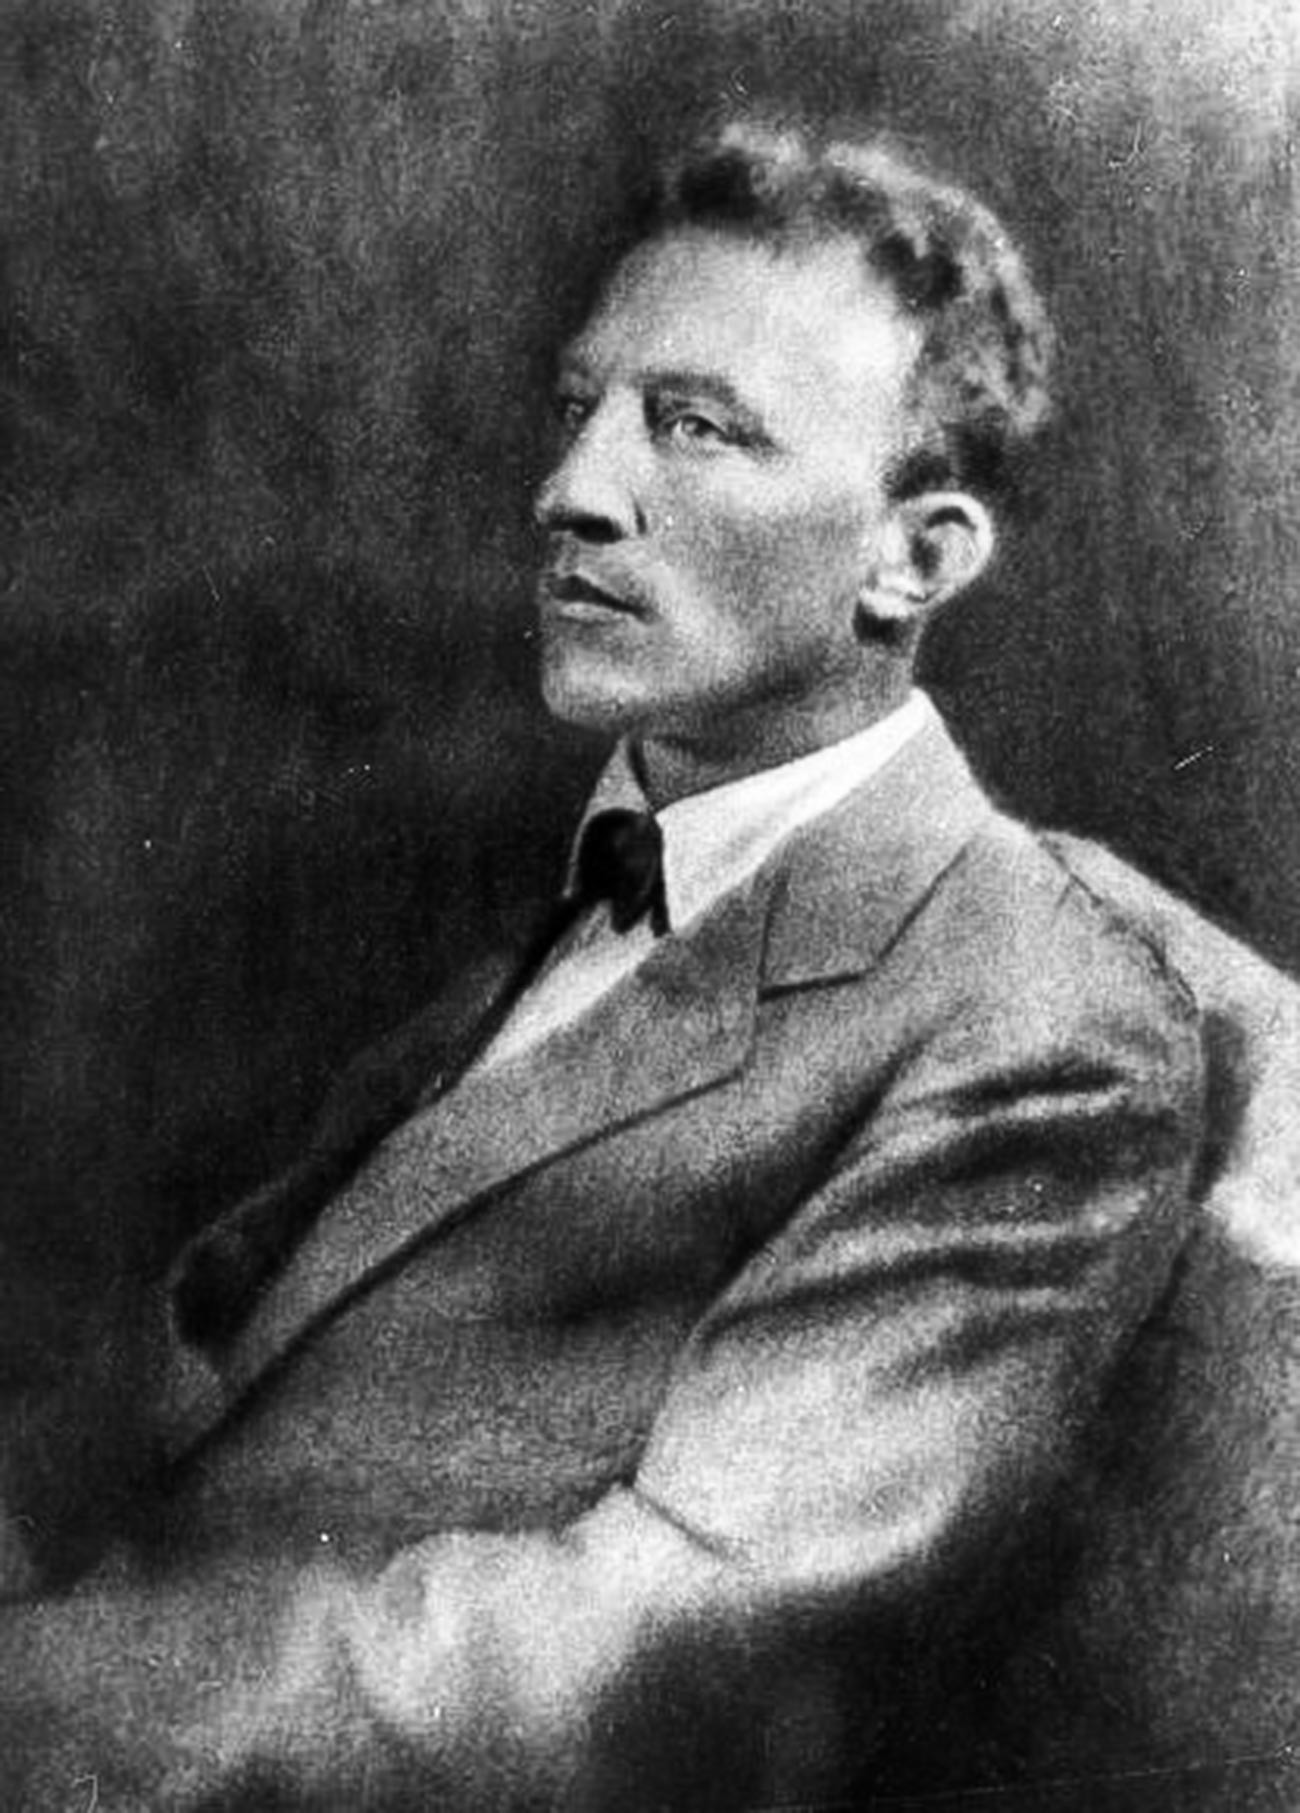  Alexánder Blok, poeta de la edad de plata, 1920

